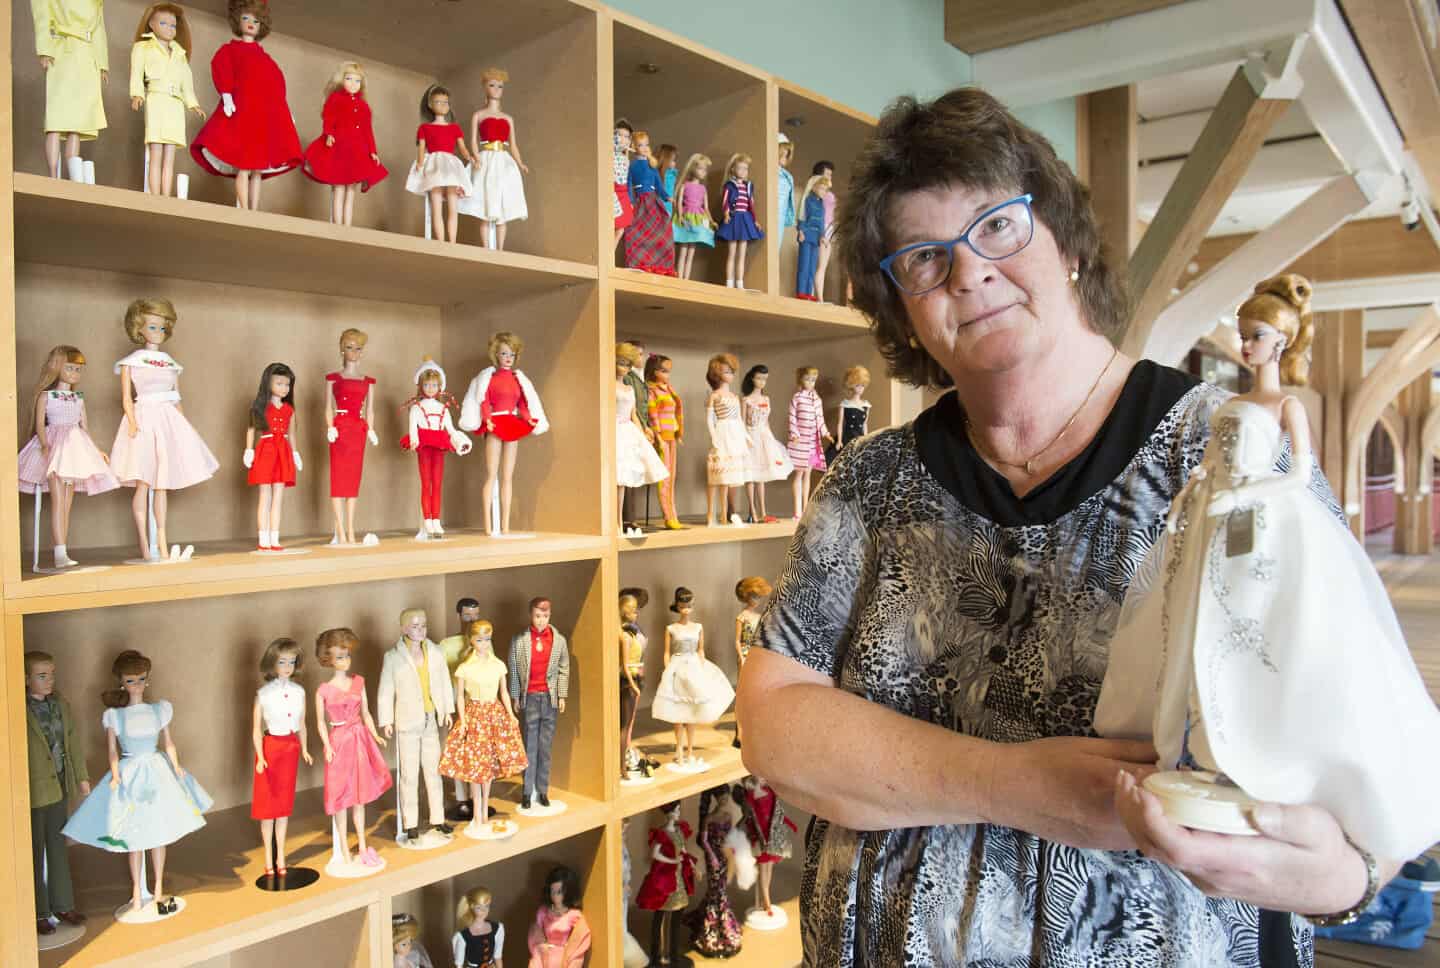 61-årige Helene elsker Barbie-dukker: Det handler om | jv.dk